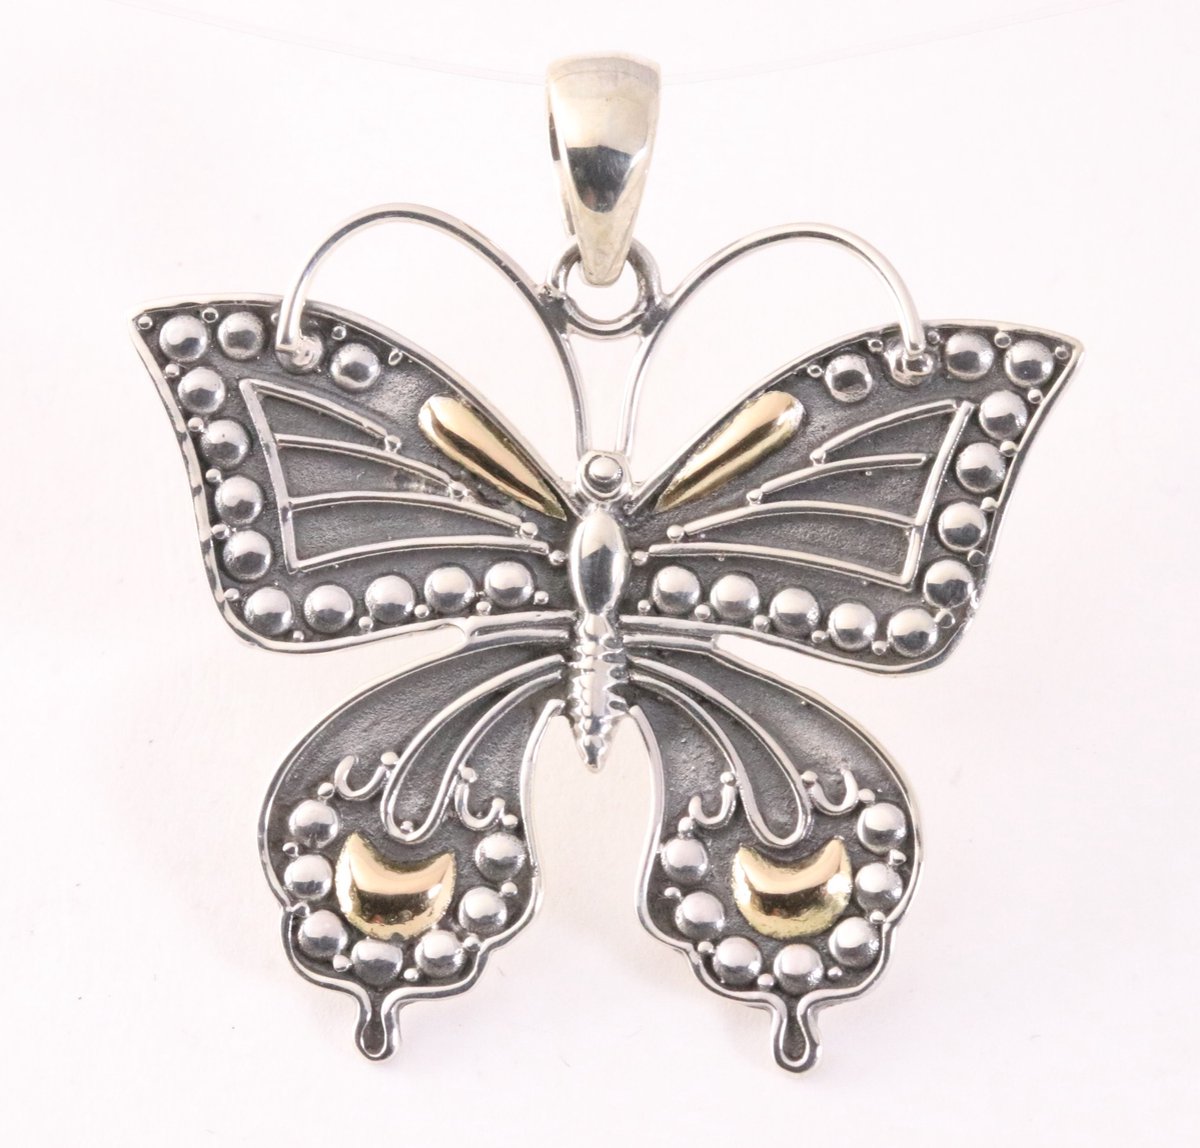 Grote zilveren vlinder hanger met 18k gouden decoraties